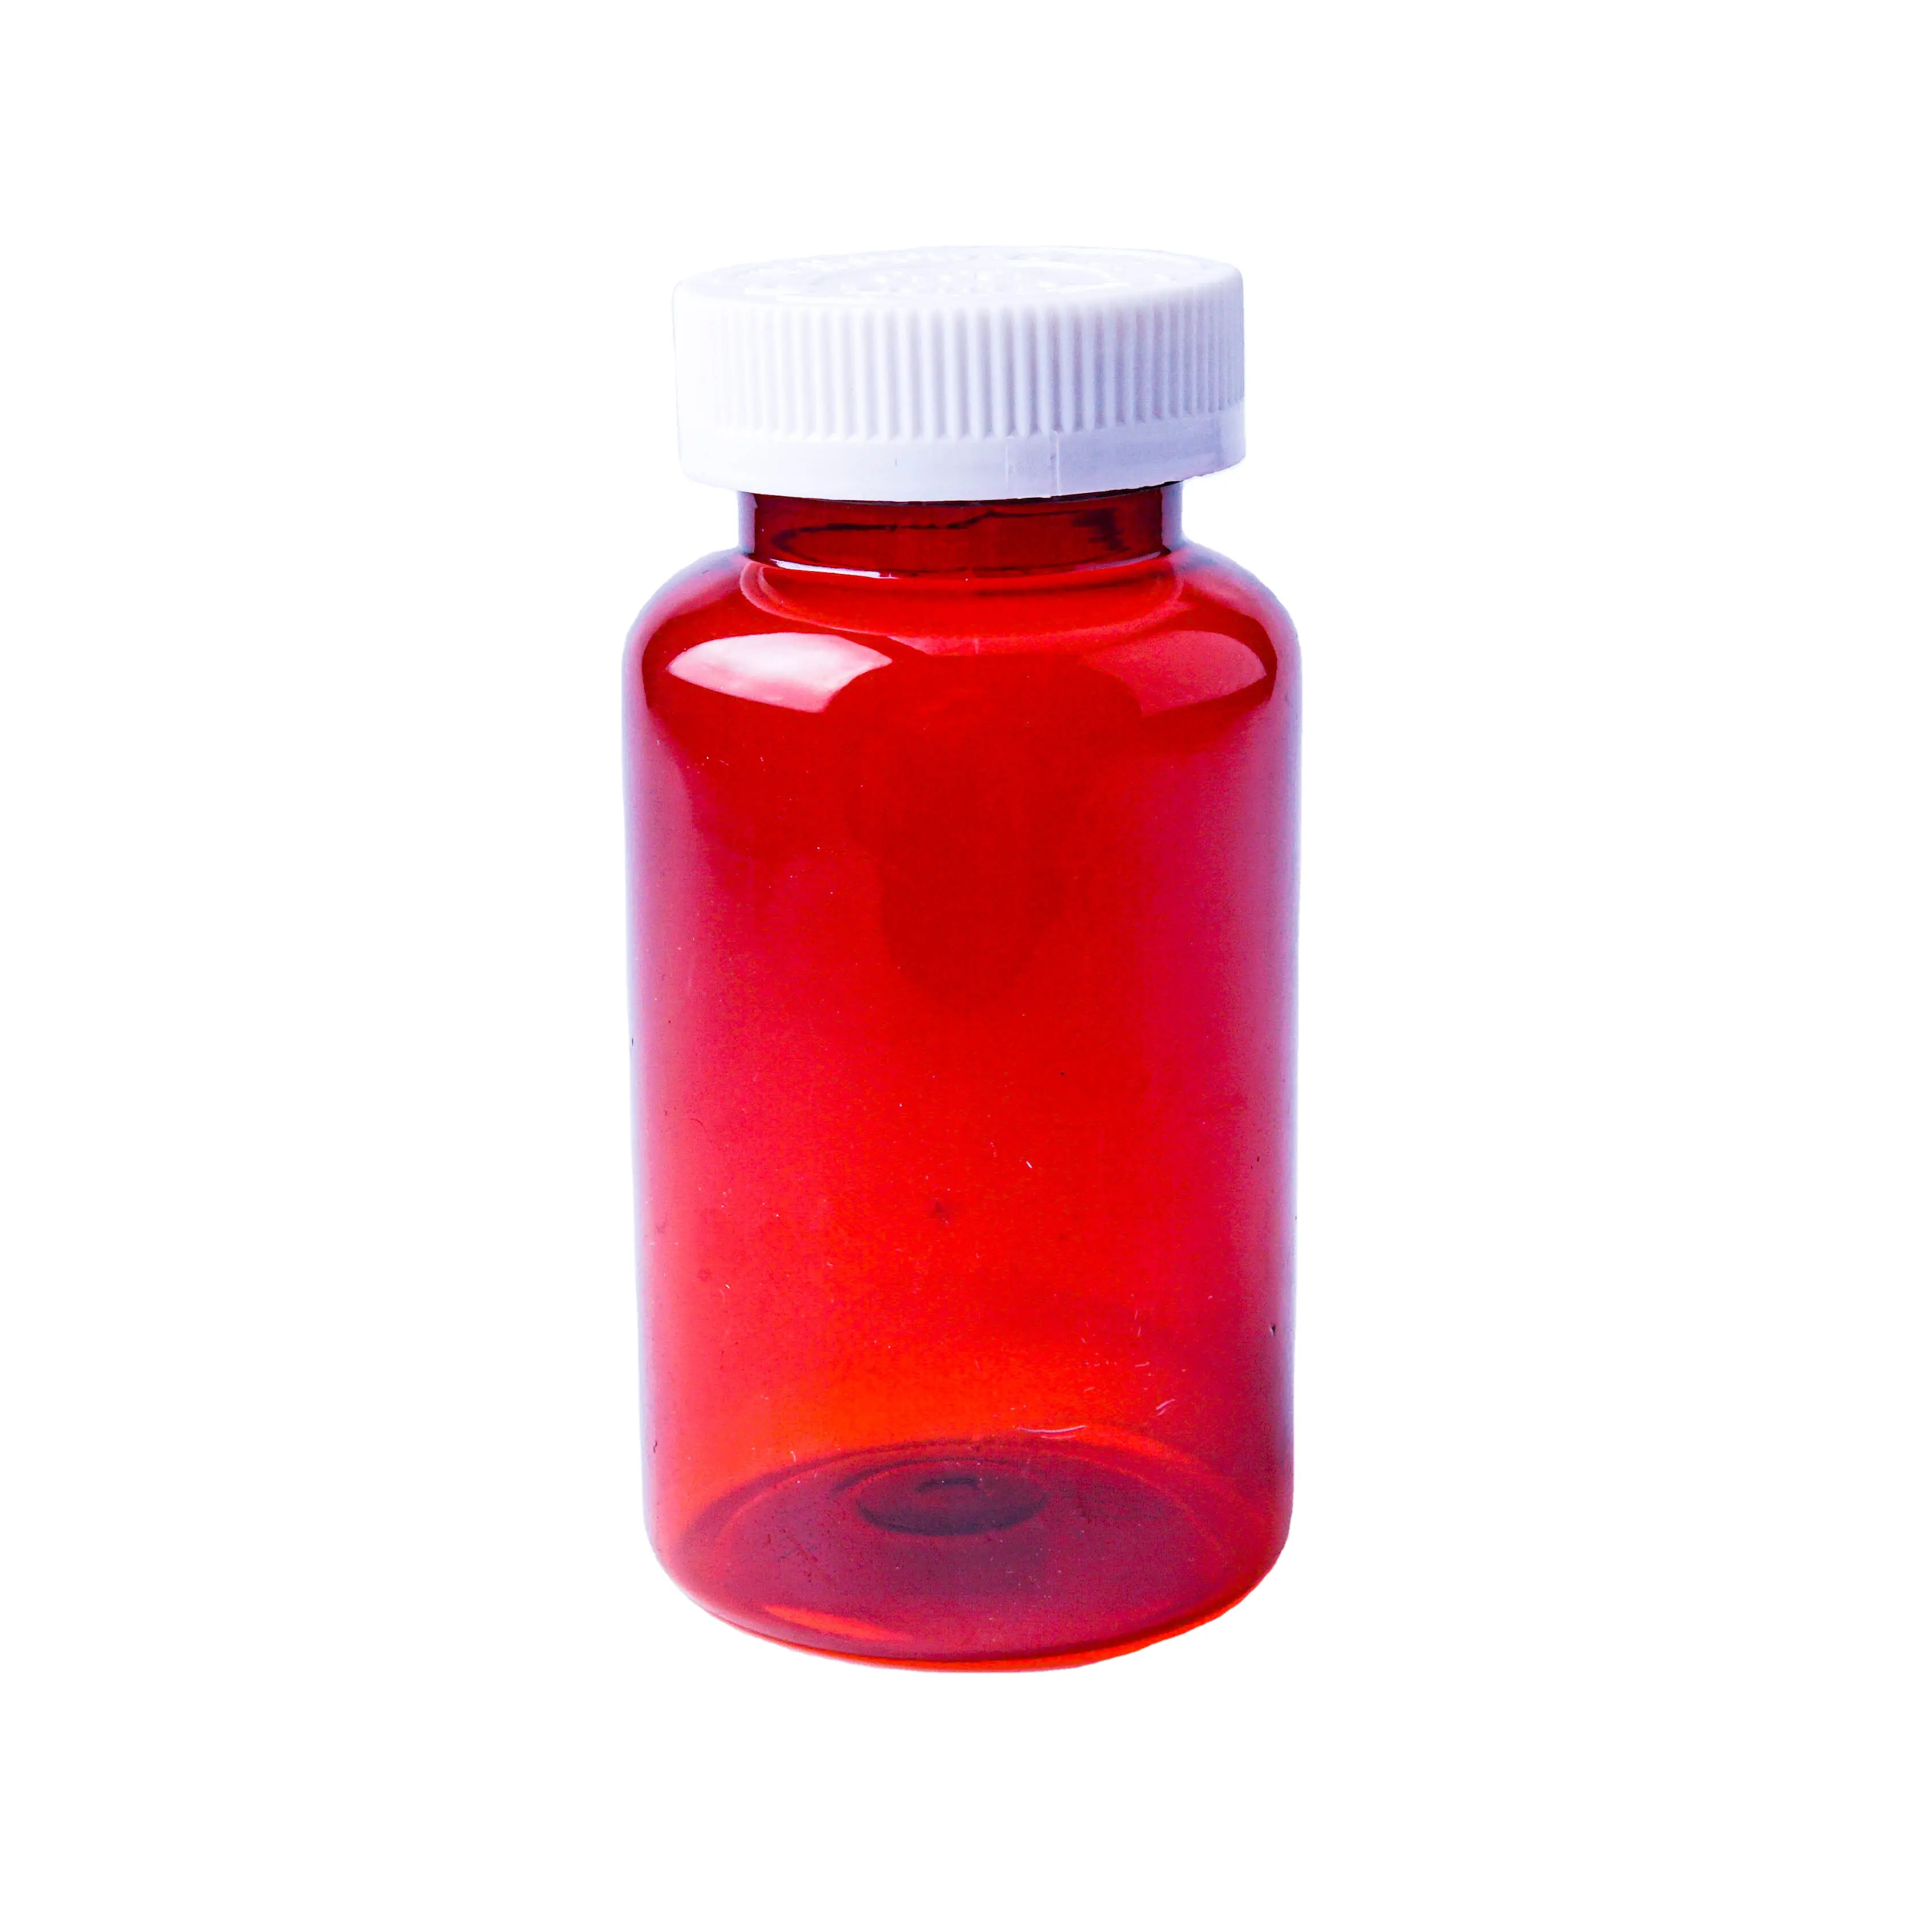 カスタム275cc赤いプラスチックペット空の琥珀色の薬カプセルボトル、カプセル薬ピル包装用のチャイルドプルーフキャップ付き